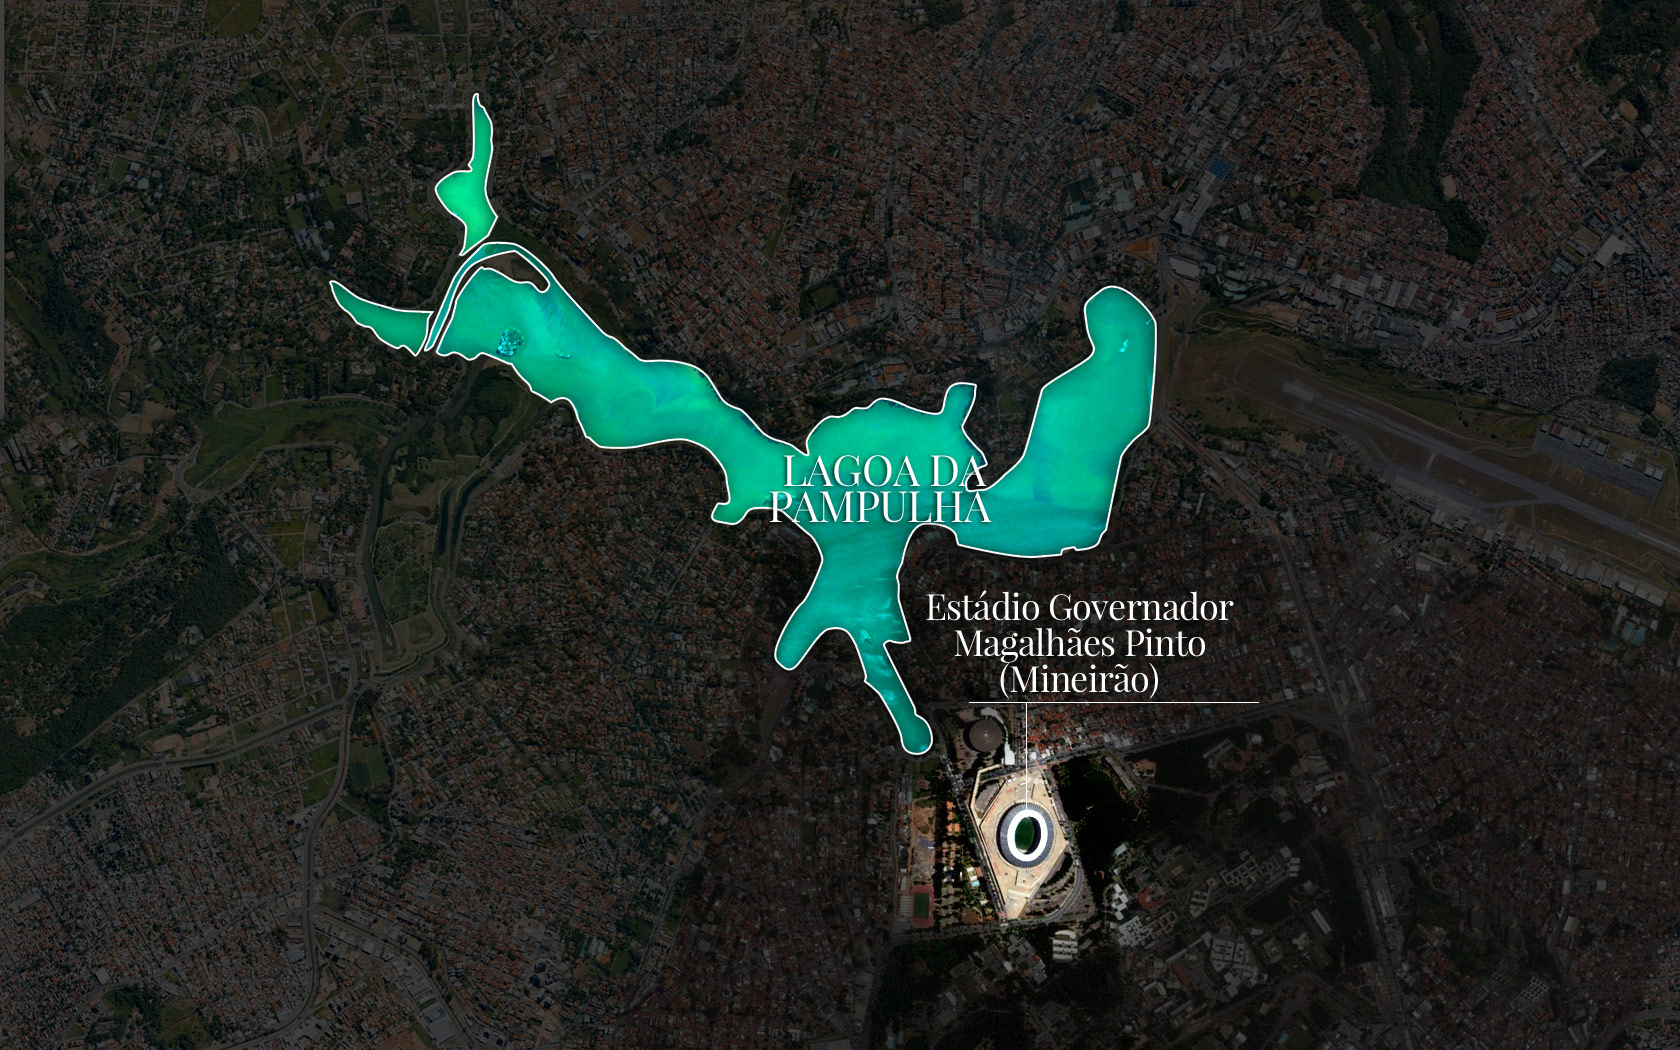 Lagoa da Pampulha - Belo horizonte - Minas Gerais